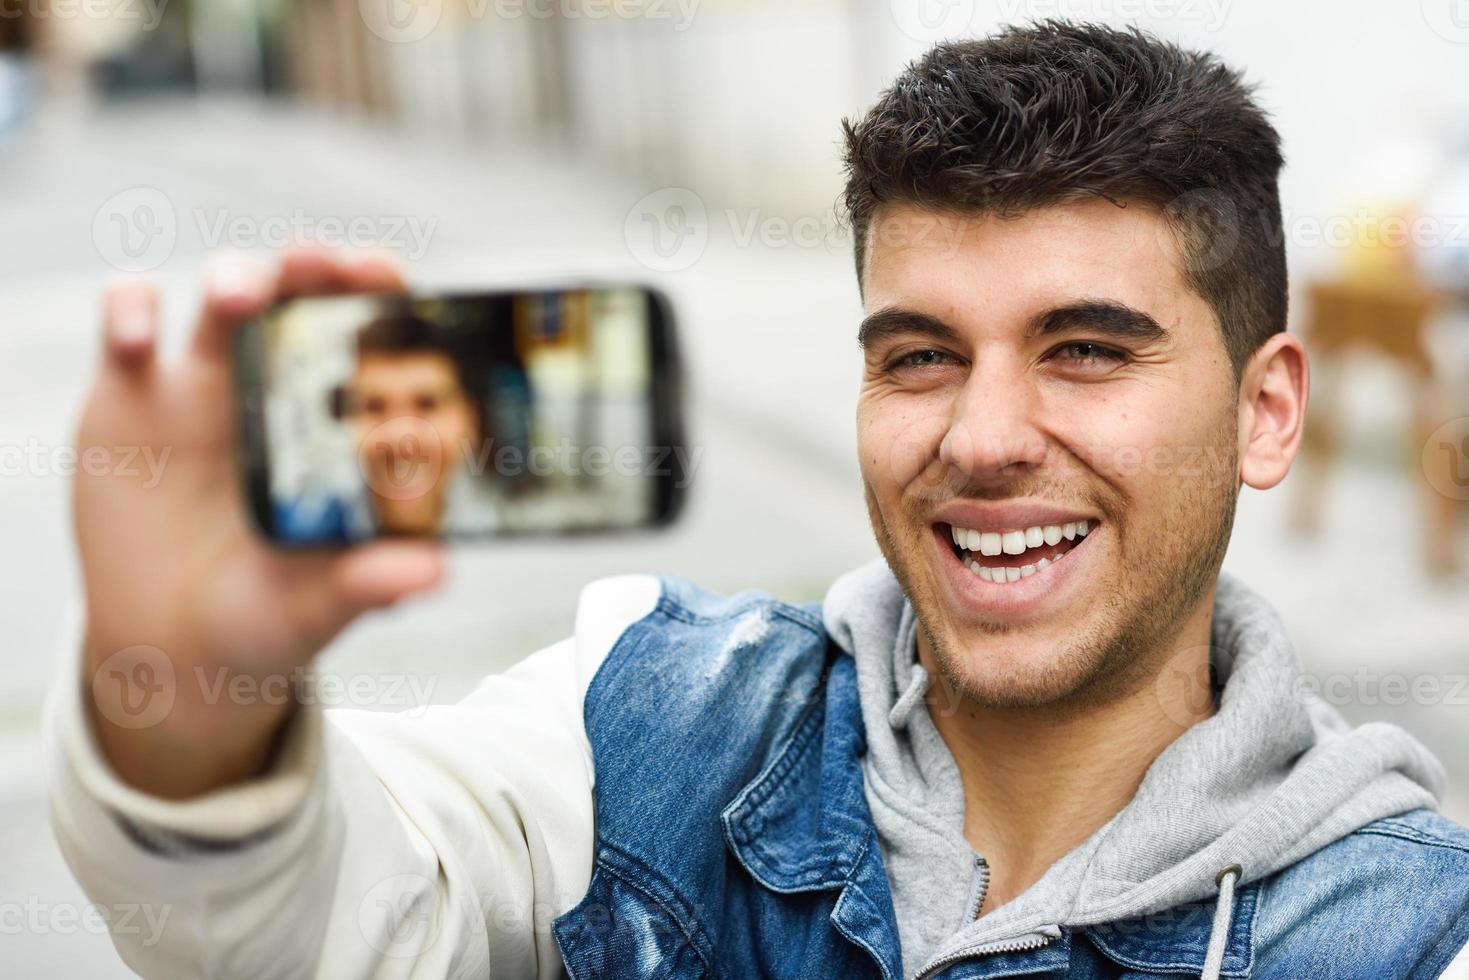 jeune homme selfie en arrière-plan urbain avec un smartphone photo